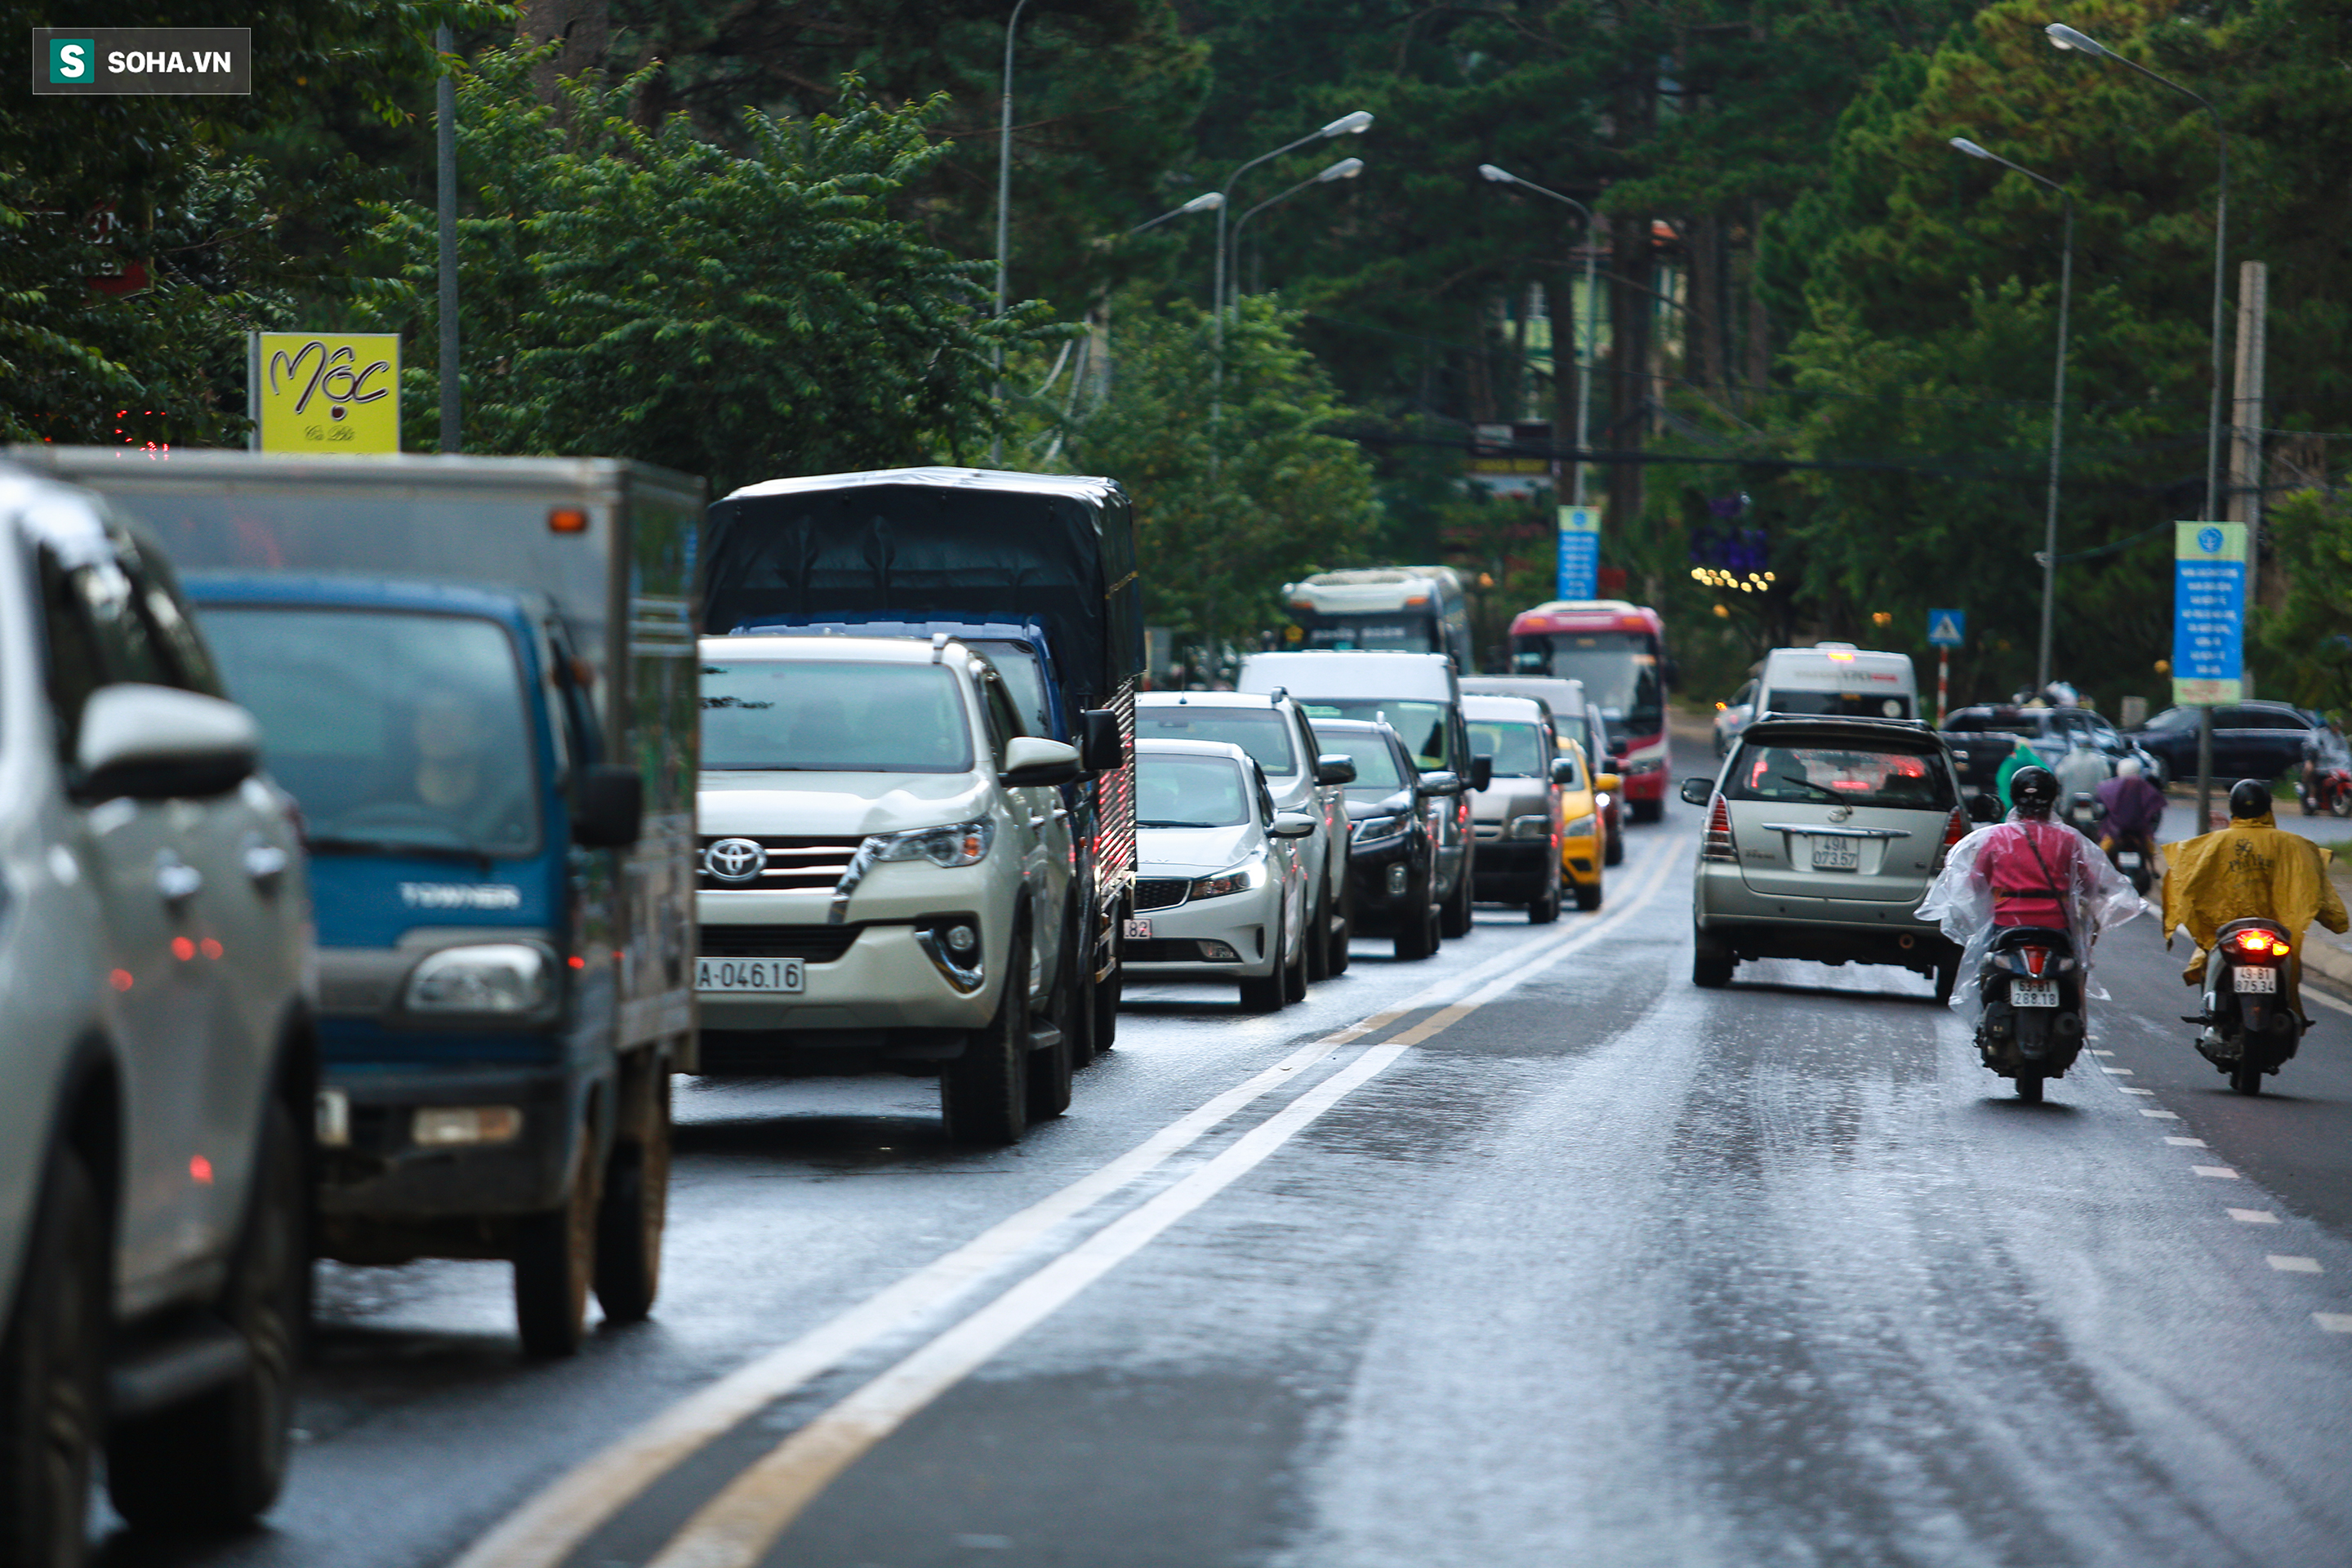 Cửa ngõ Đà Lạt ùn tắc kéo dài, hàng trăm ôtô nhúc nhích từng chút trong cơn mưa chiều - Ảnh 4.